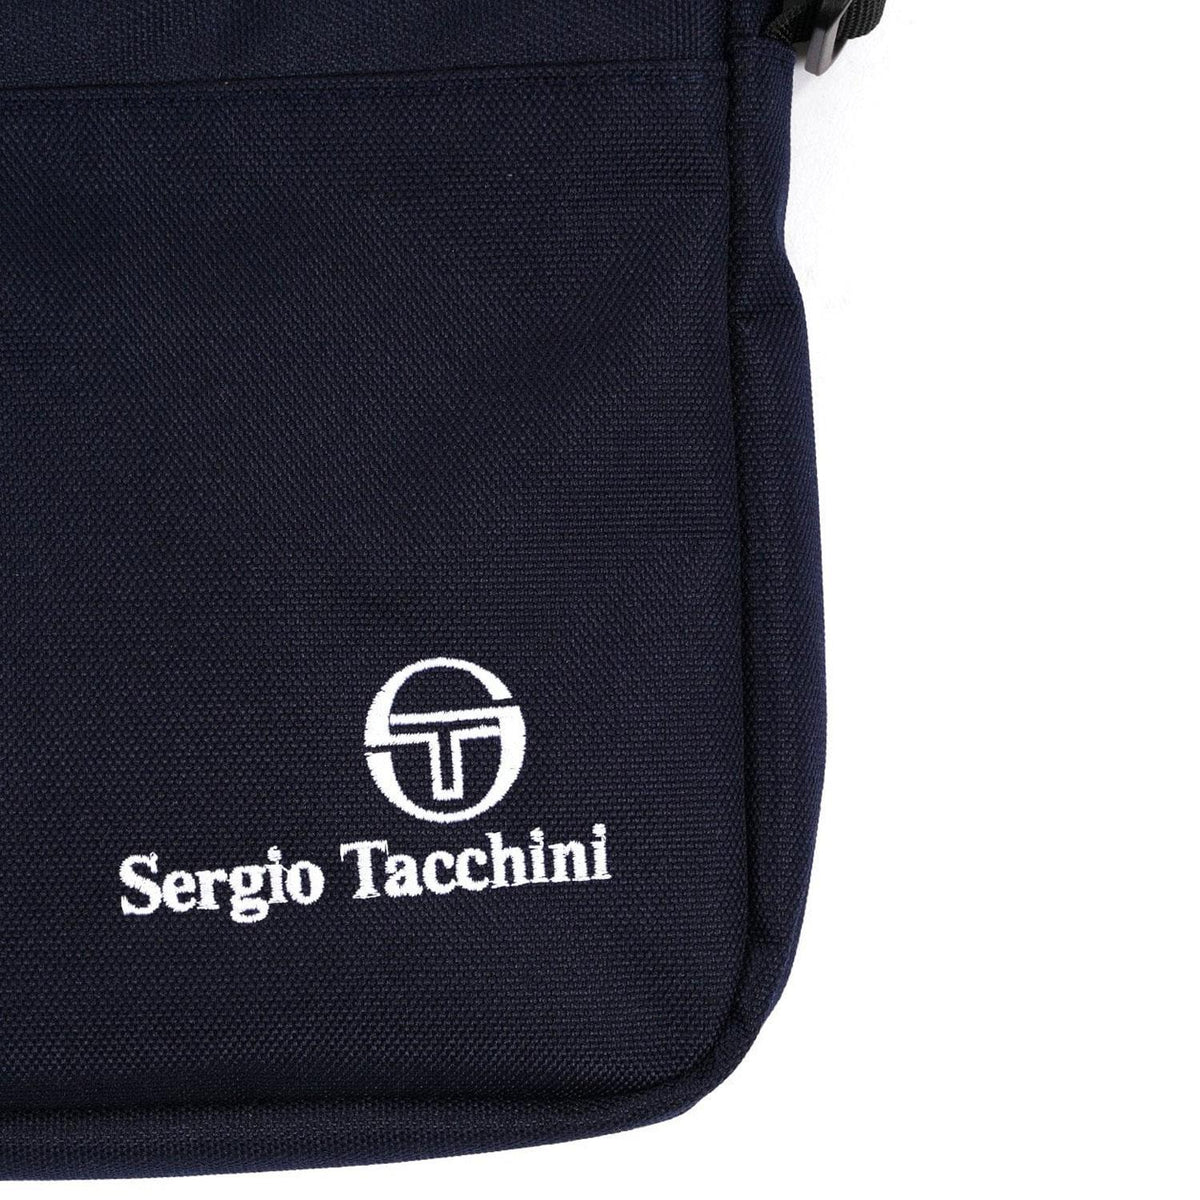 Sergio Tacchini Mens Retro Vio Crossbody Bag